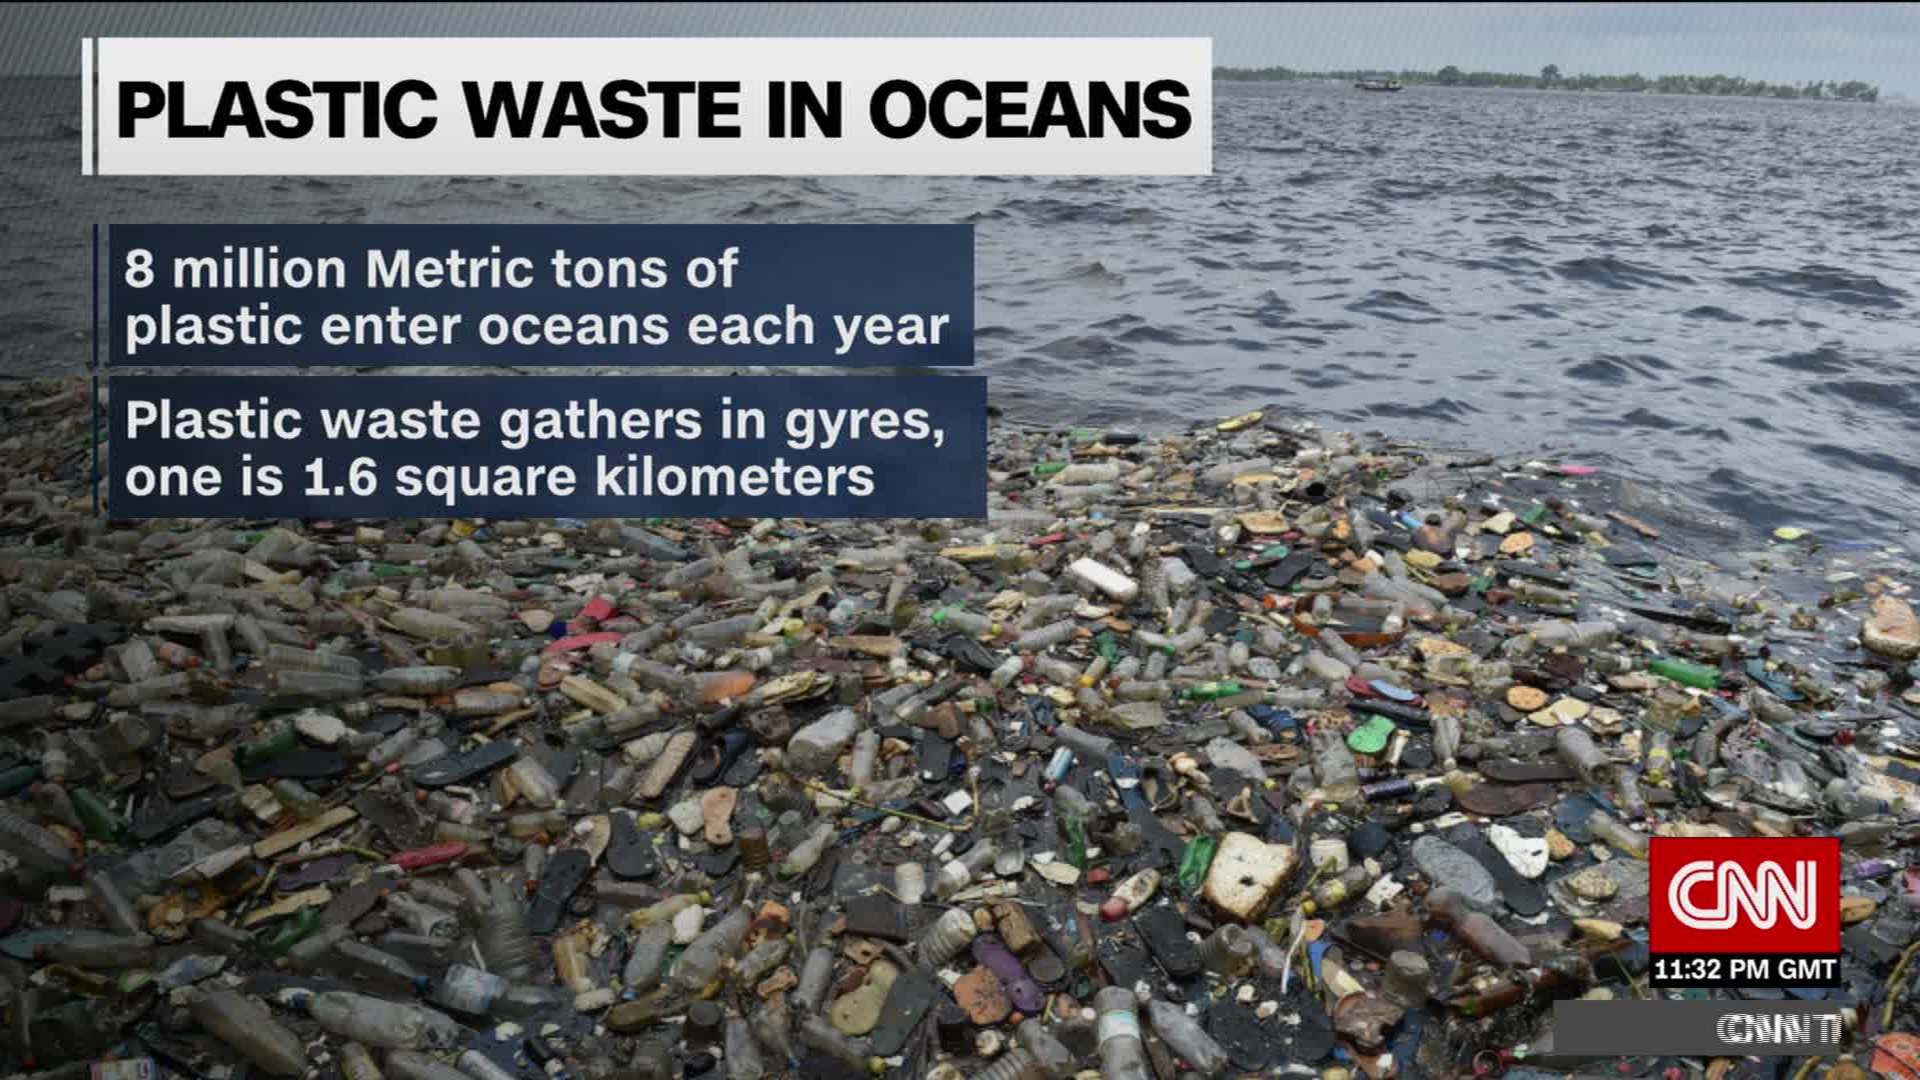 Plastic waste harming | CNN